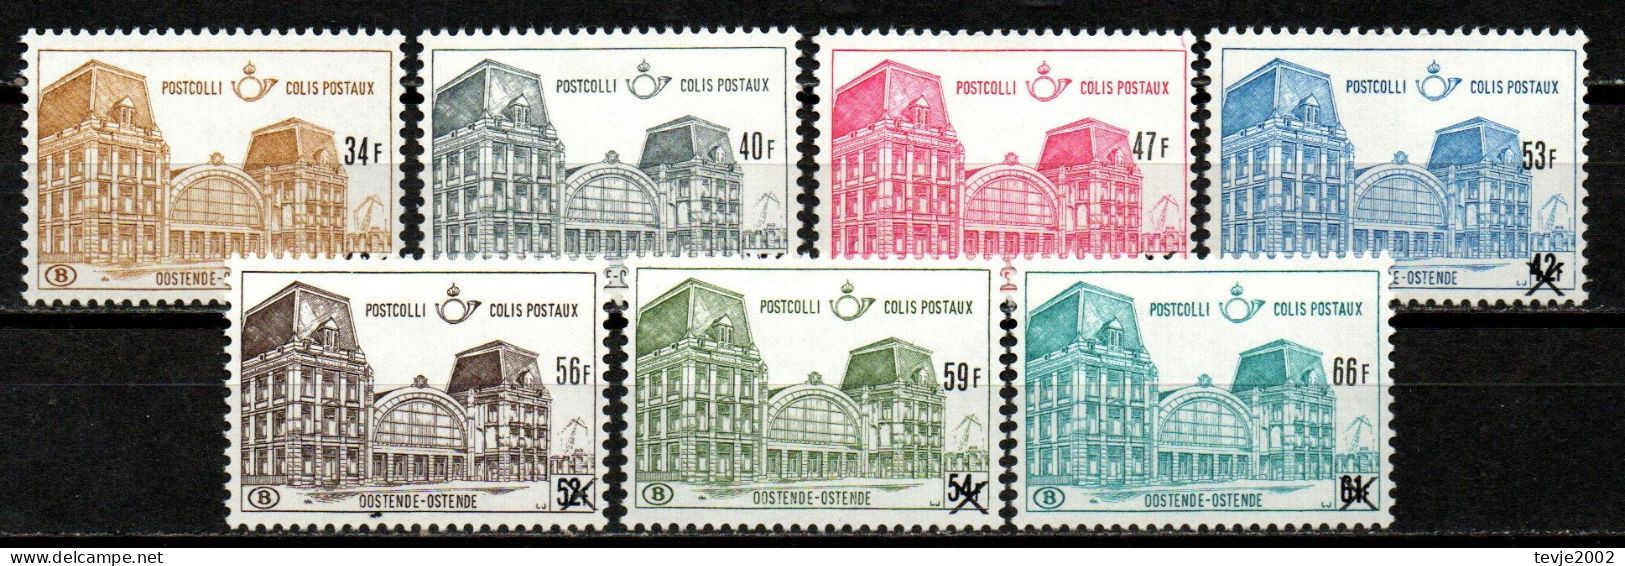 Belgien 1971 - Postpaketmarken Mi.Nr. 76 - 82 - Postfrisch MNH - Postfris